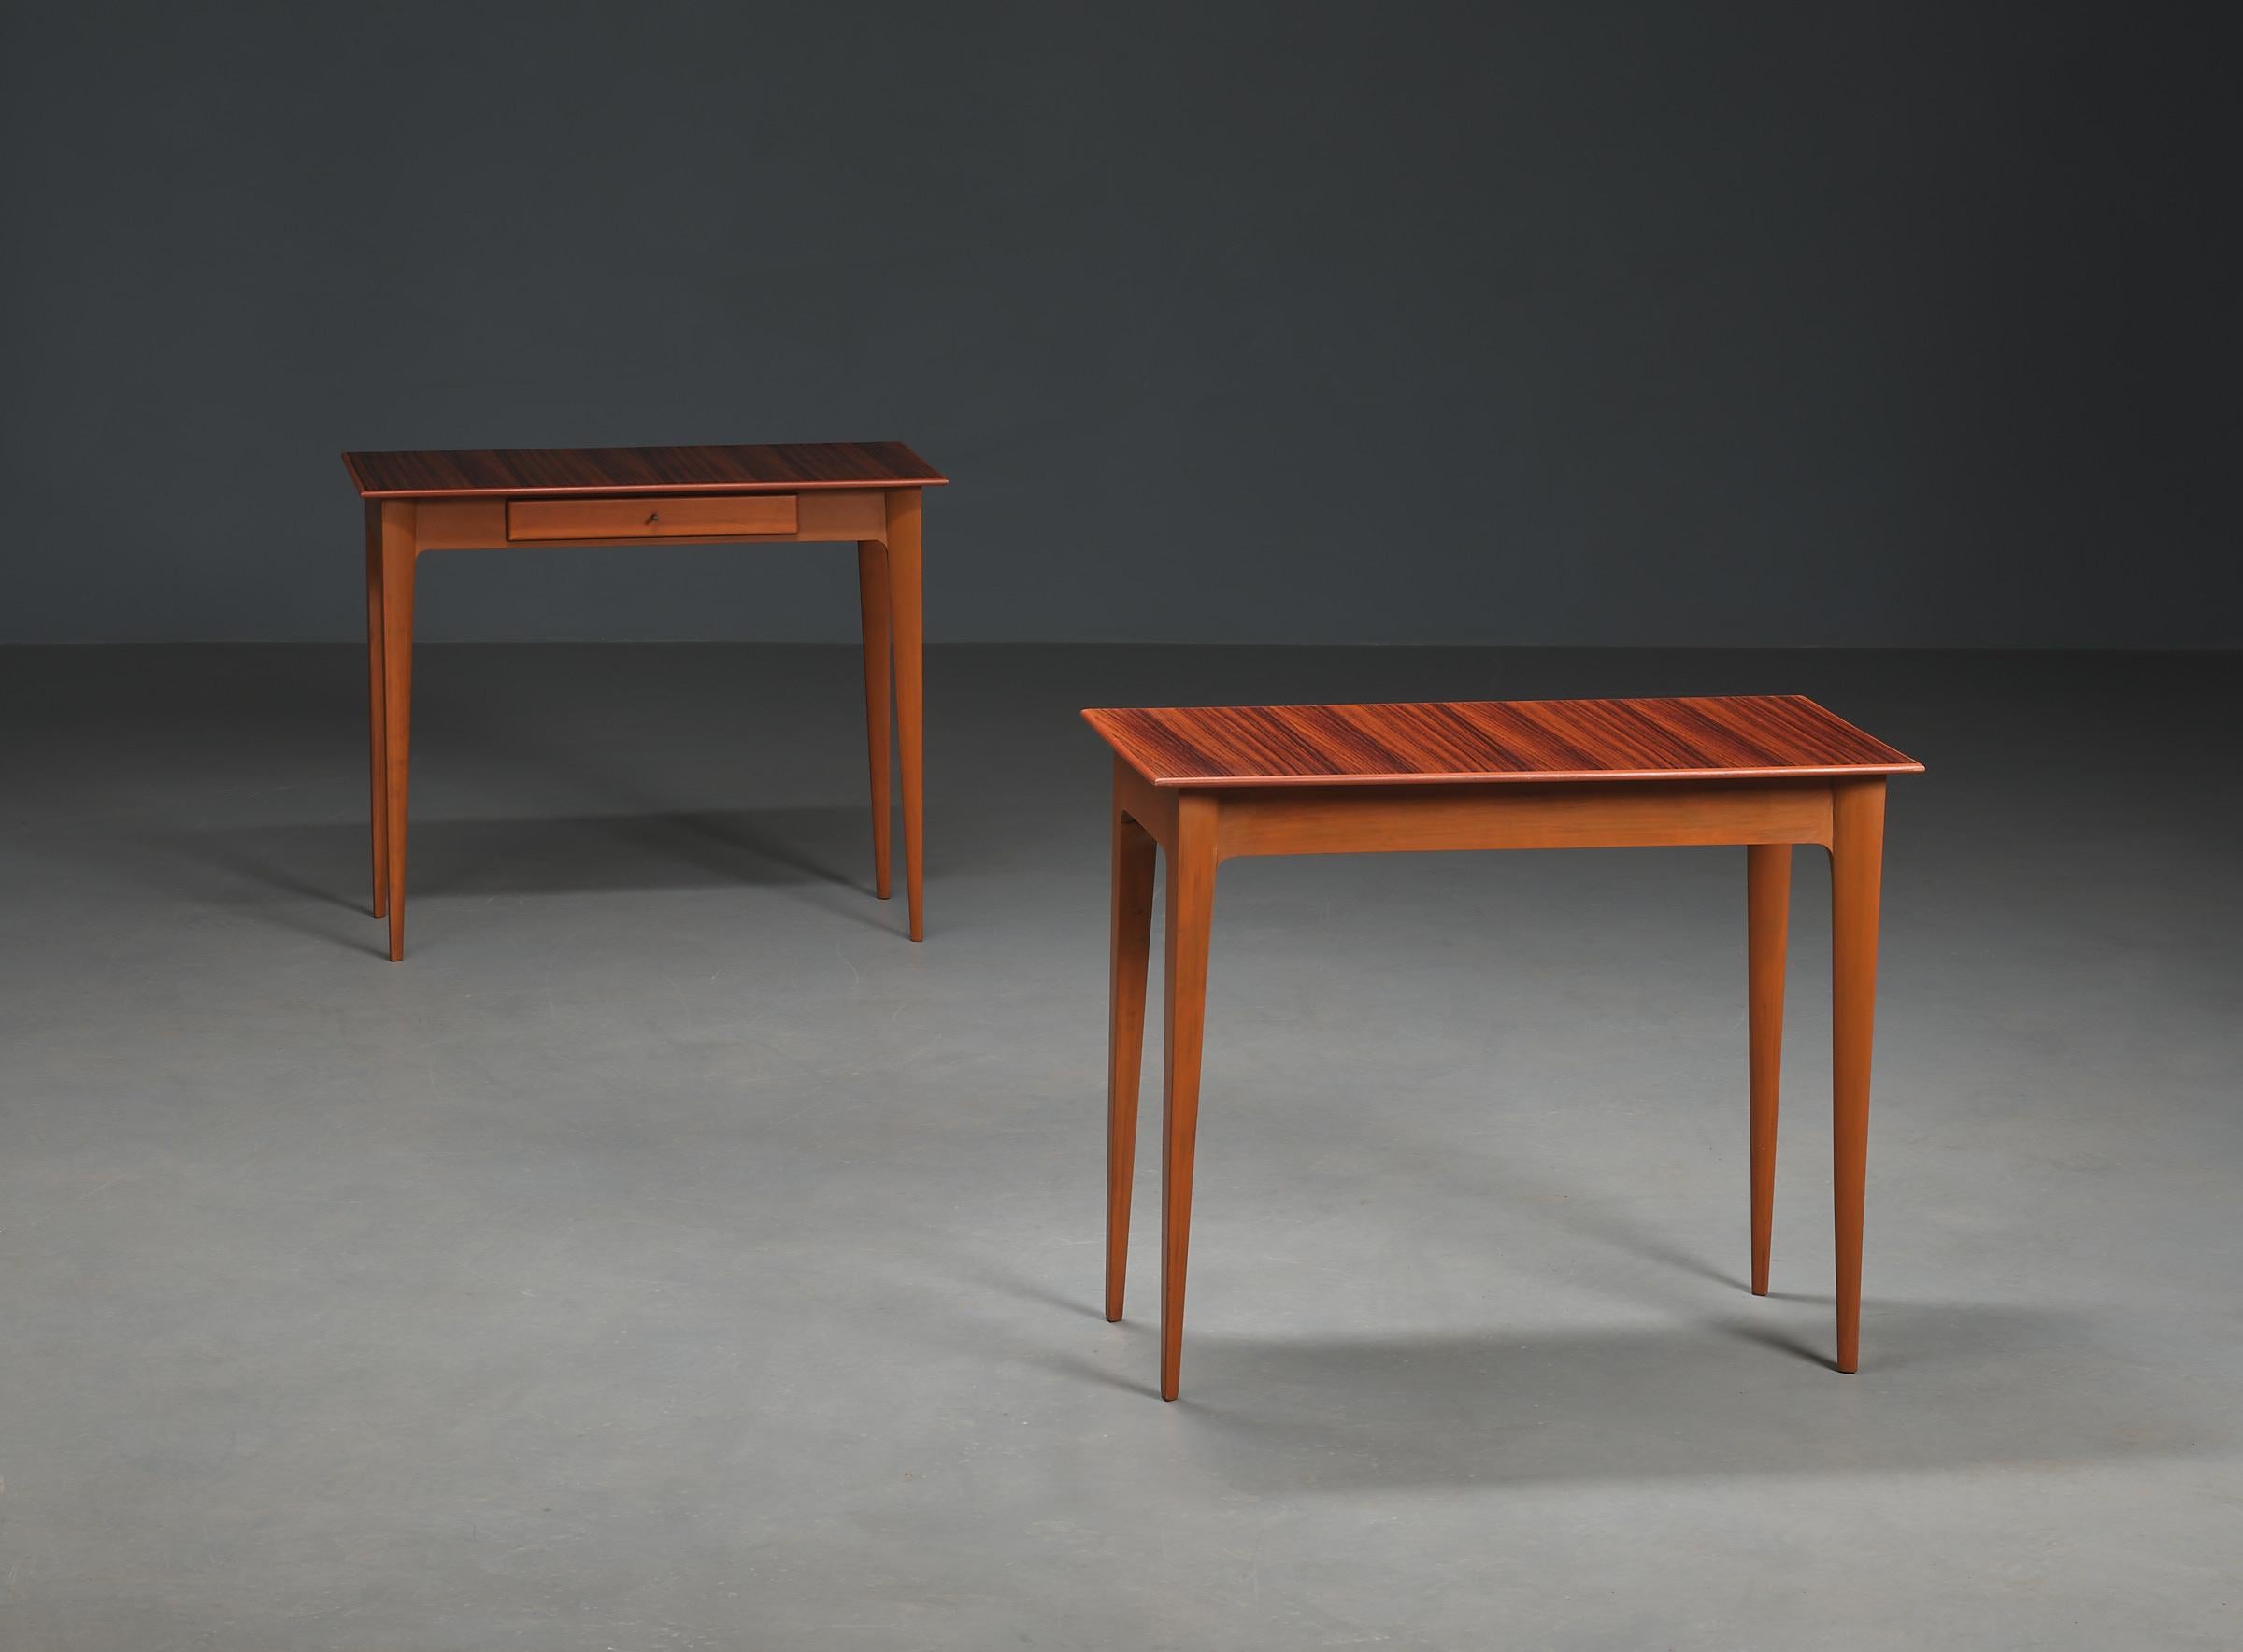 Découvrez cette paire de tables d'appoint italiennes des années 1950 qui résument parfaitement l'esthétique du design italien de l'époque. Fabriquées en bois noble et dotées de pieds effilés, ces tables témoignent de l'excellence de l'artisanat